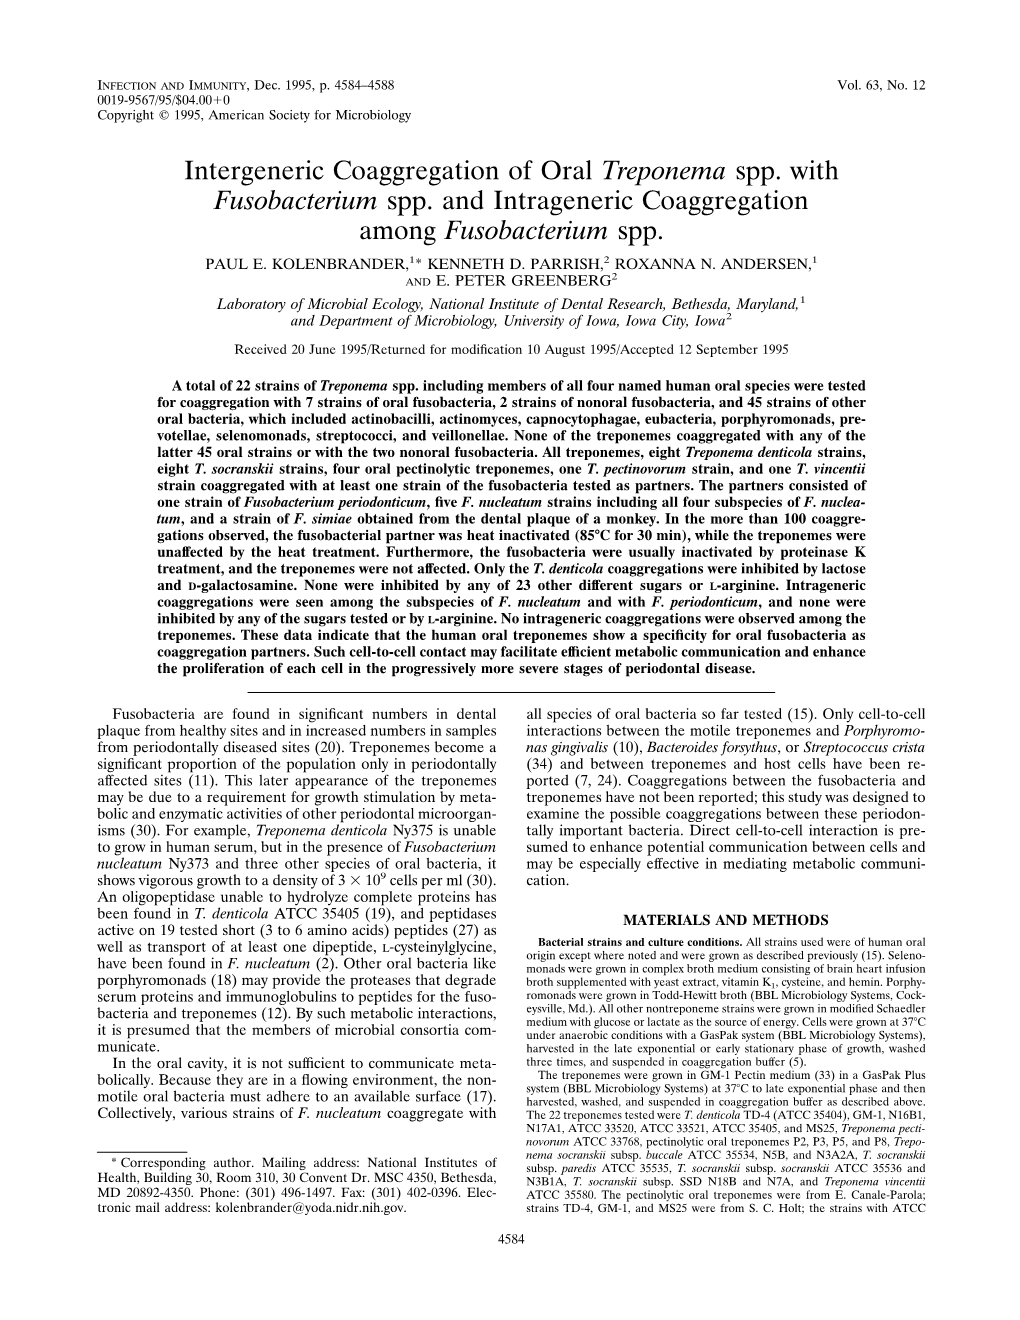 Intergeneric Coaggregation of Oral Treponema Spp. with Fusobacterium Spp